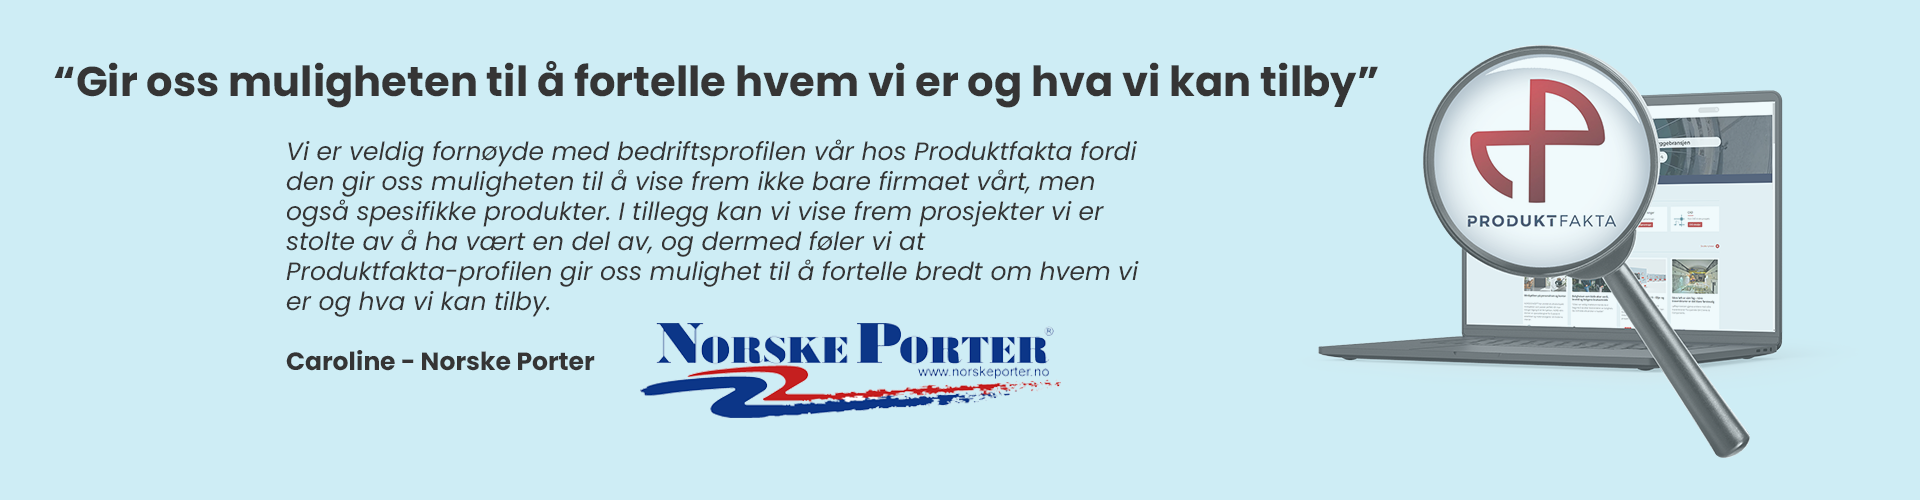 Norske_porter-1